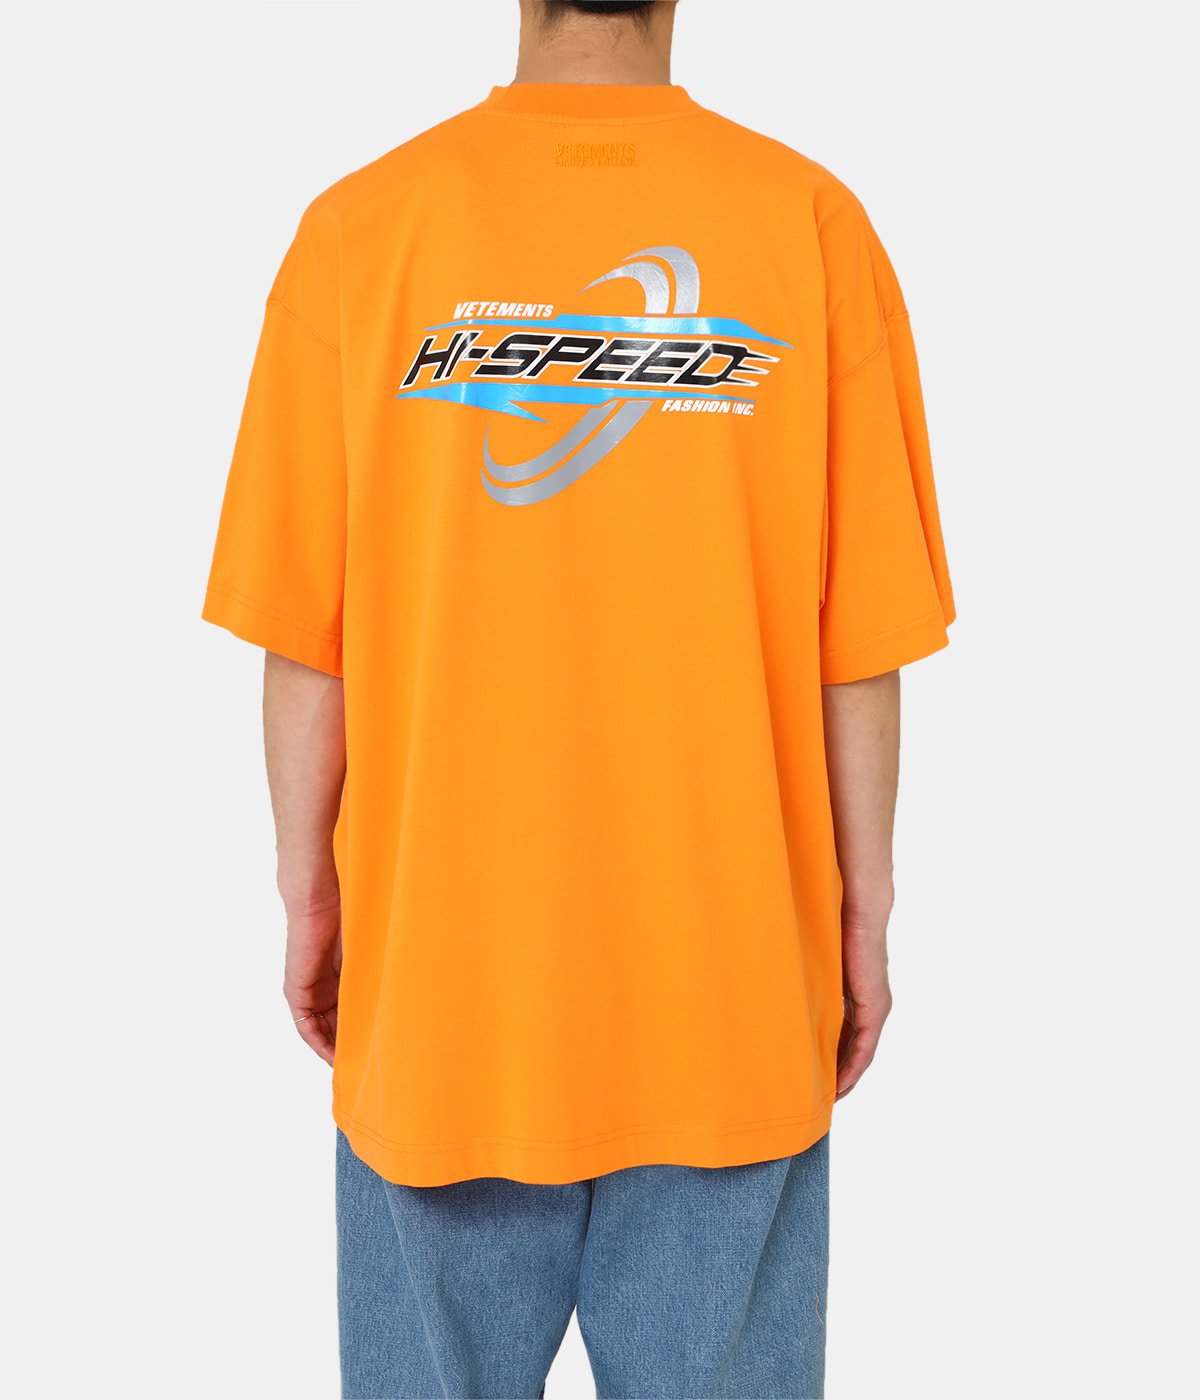 VETEMENTS ヴェトモン / STAFF Tシャツ オレンジ バックロゴ